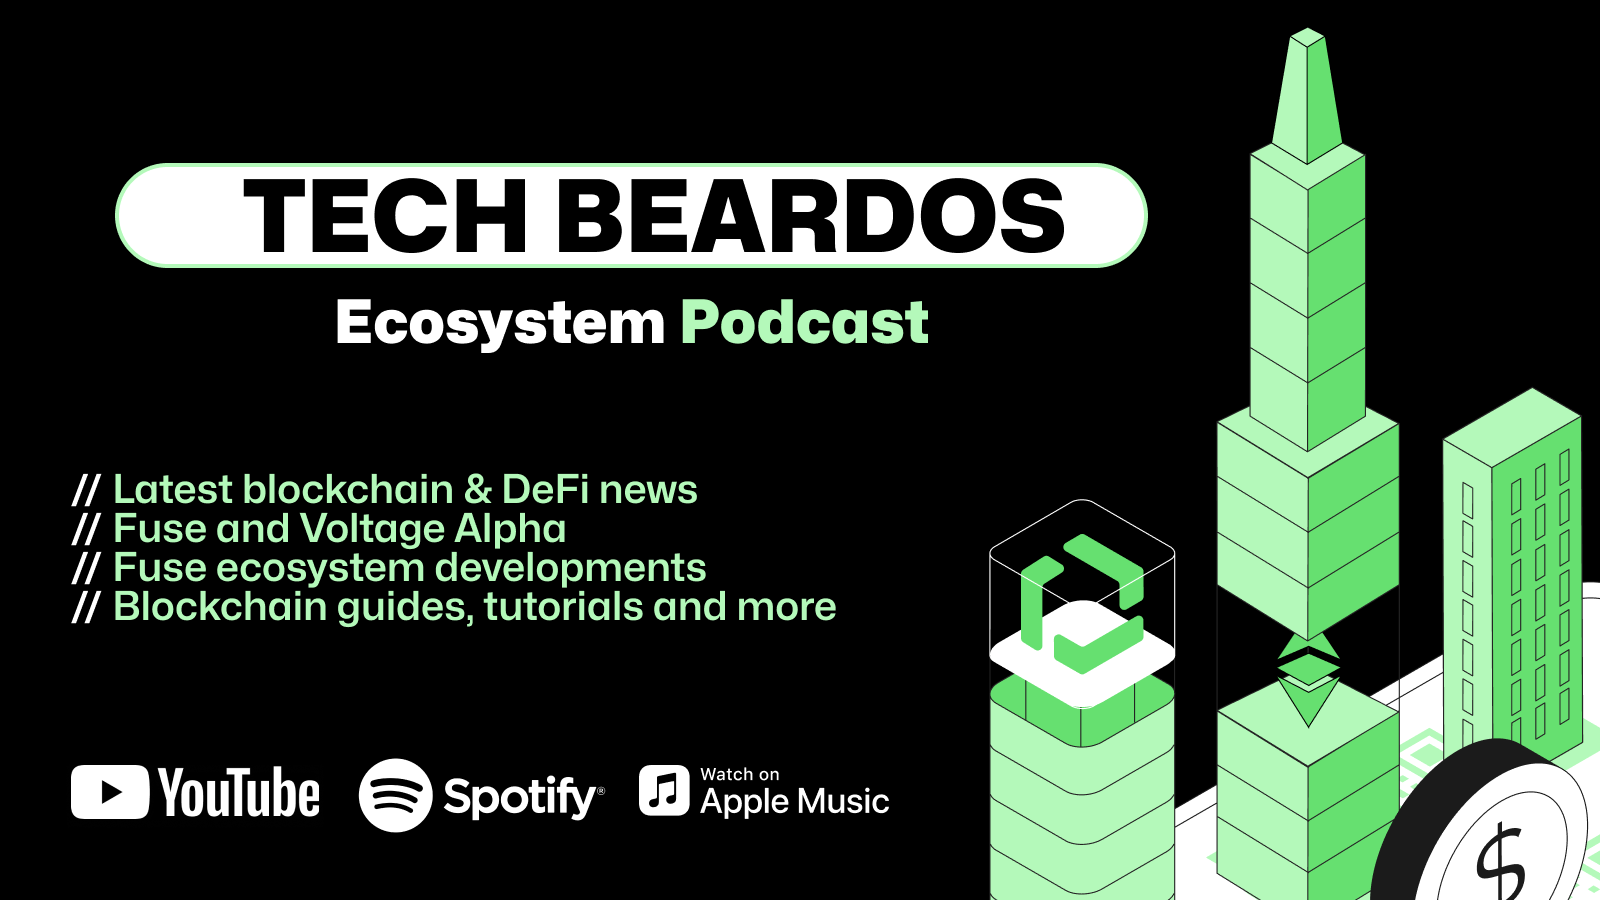 tech beardos podcast